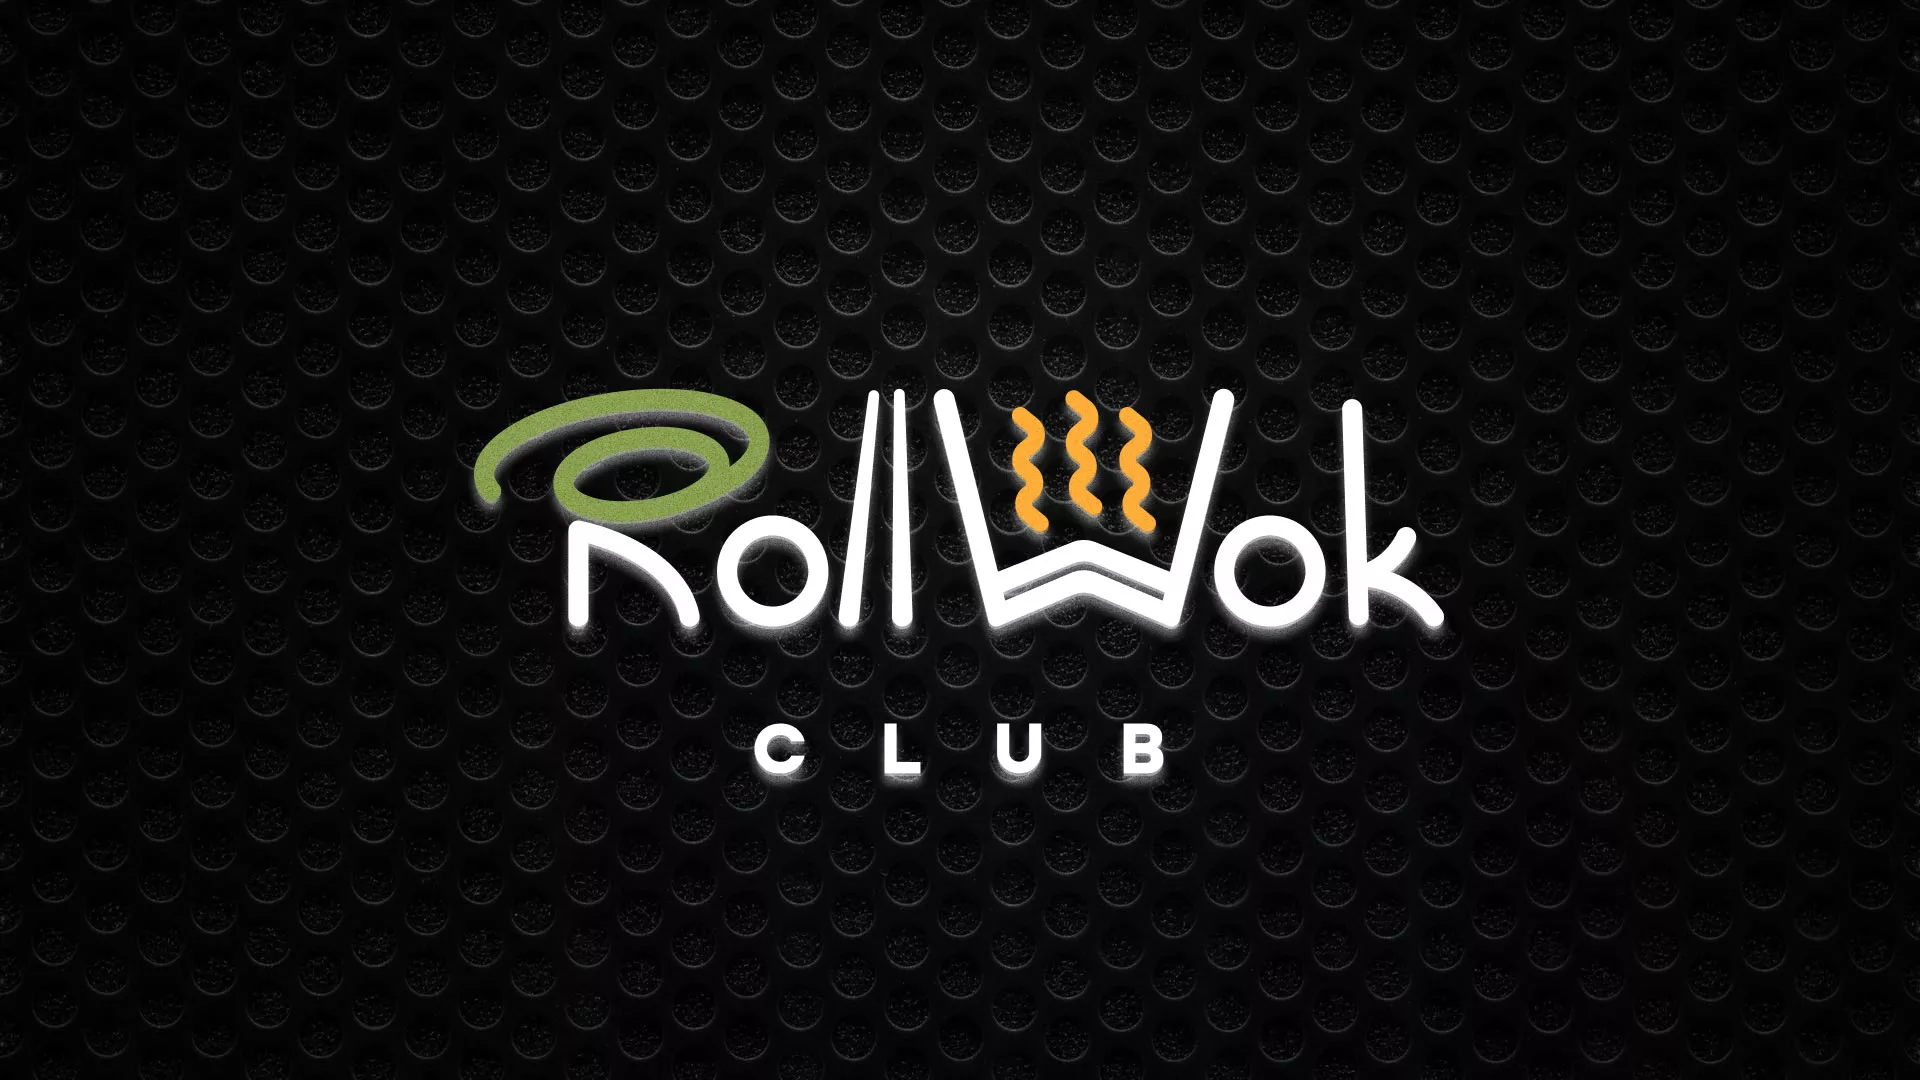 Брендирование торговых точек суши-бара «Roll Wok Club» в Уссурийске